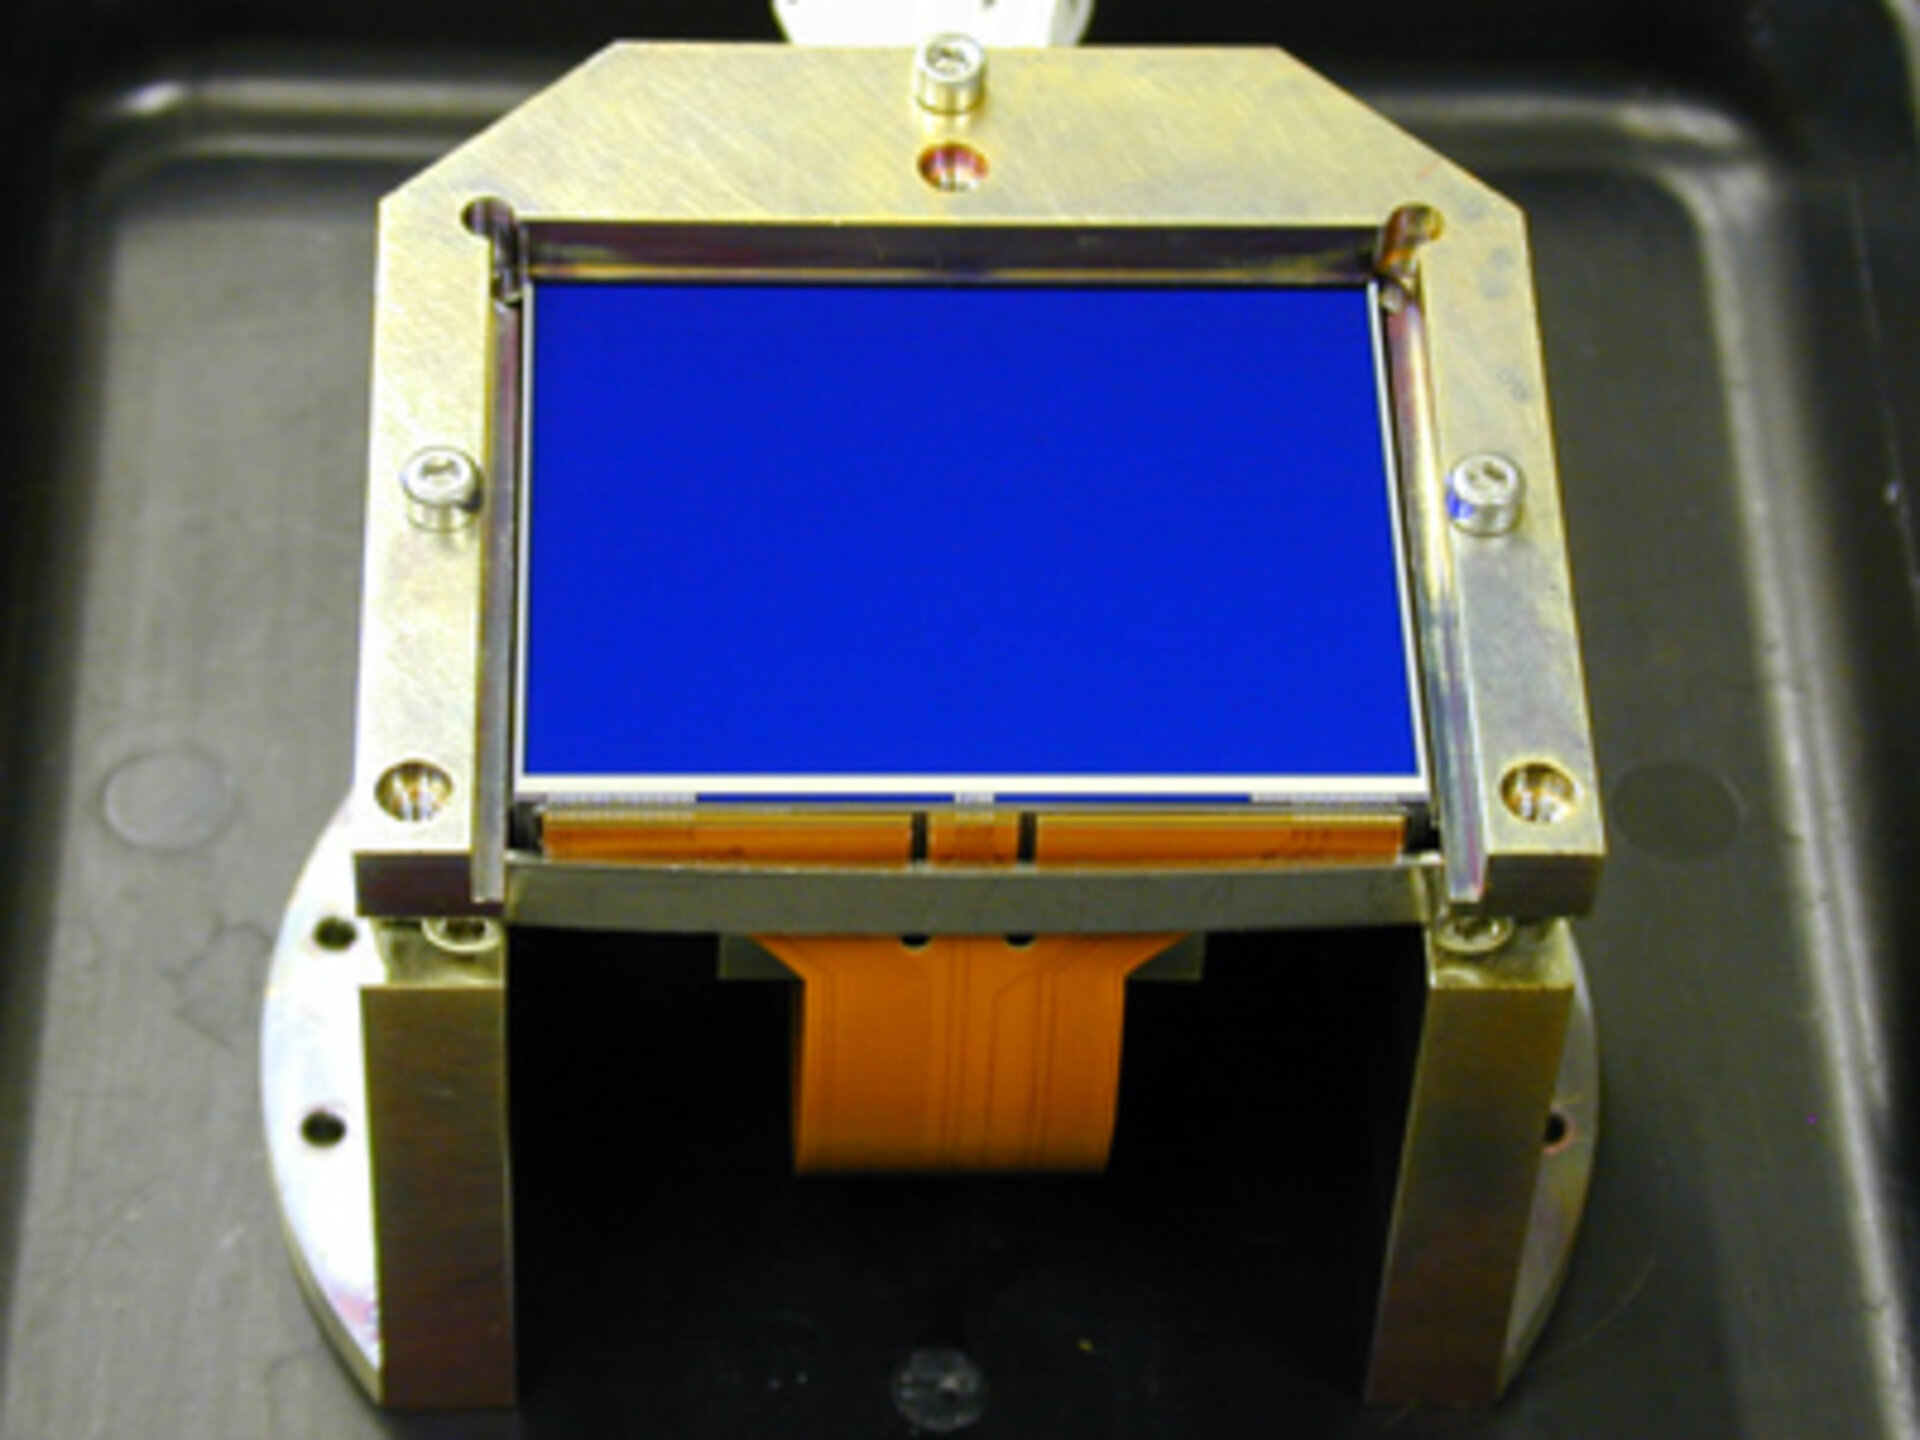 Kernelement der Nutzlast ist ein CCD-Sensorfeld